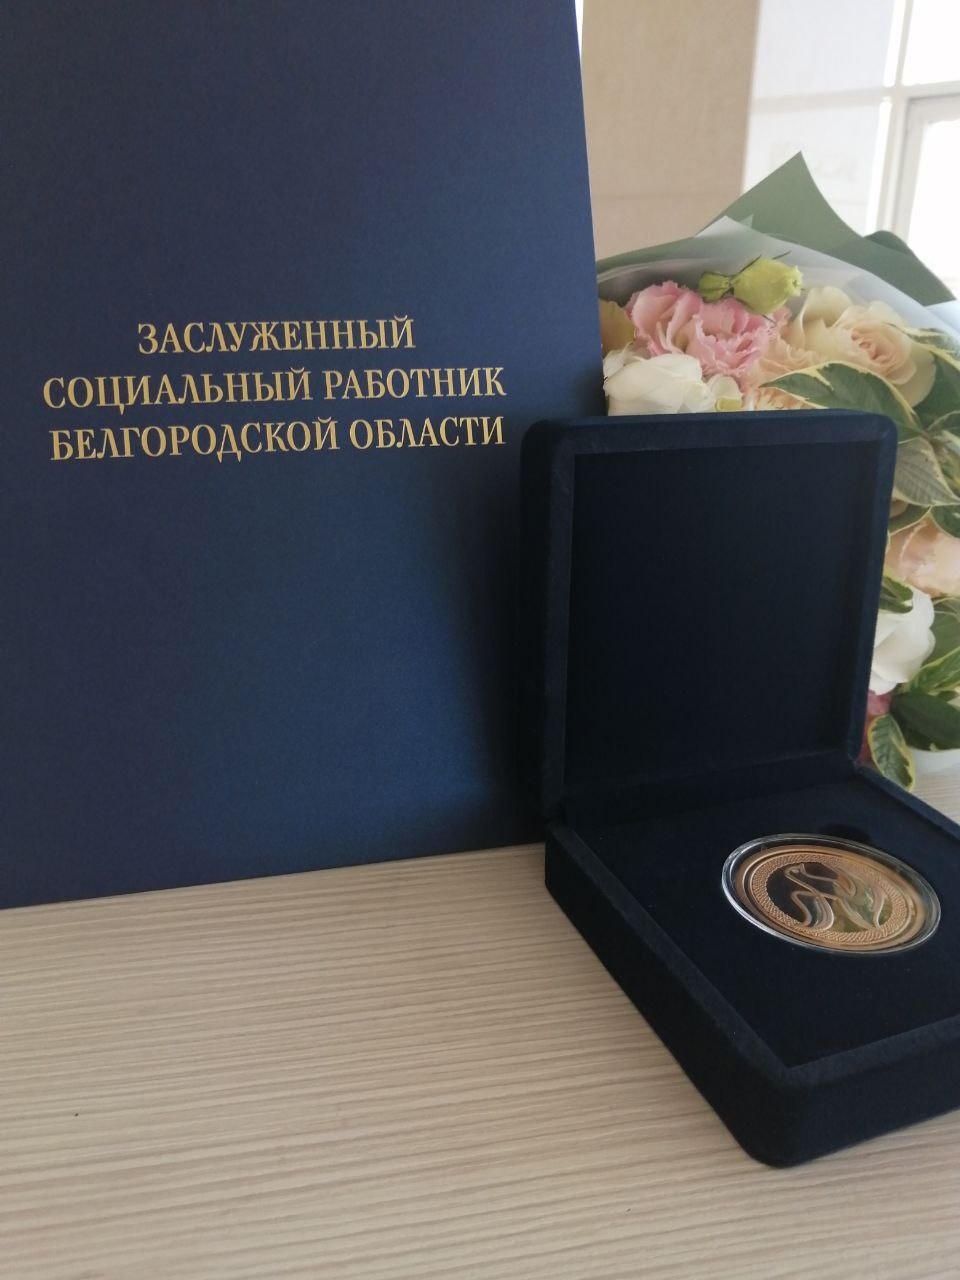 Стартовал ежегодный конкурс по присвоению почётного звания «Заслуженный социальный работник Белгородской области».